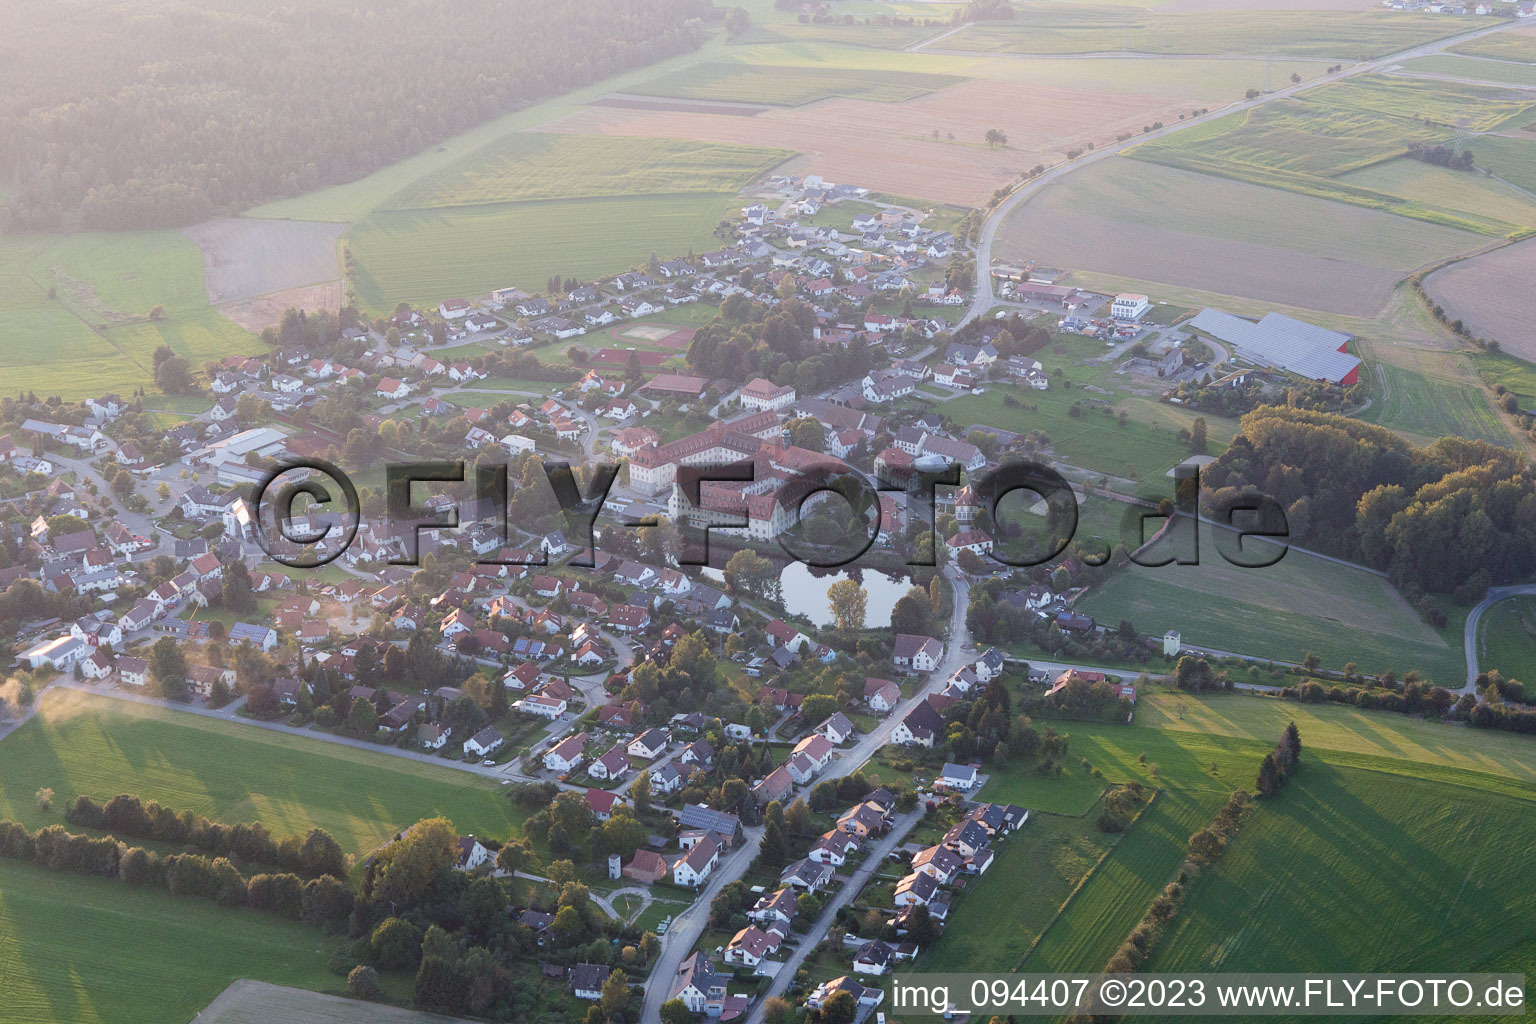 Vue aérienne de Monastère Wald à Wald dans le département Bade-Wurtemberg, Allemagne